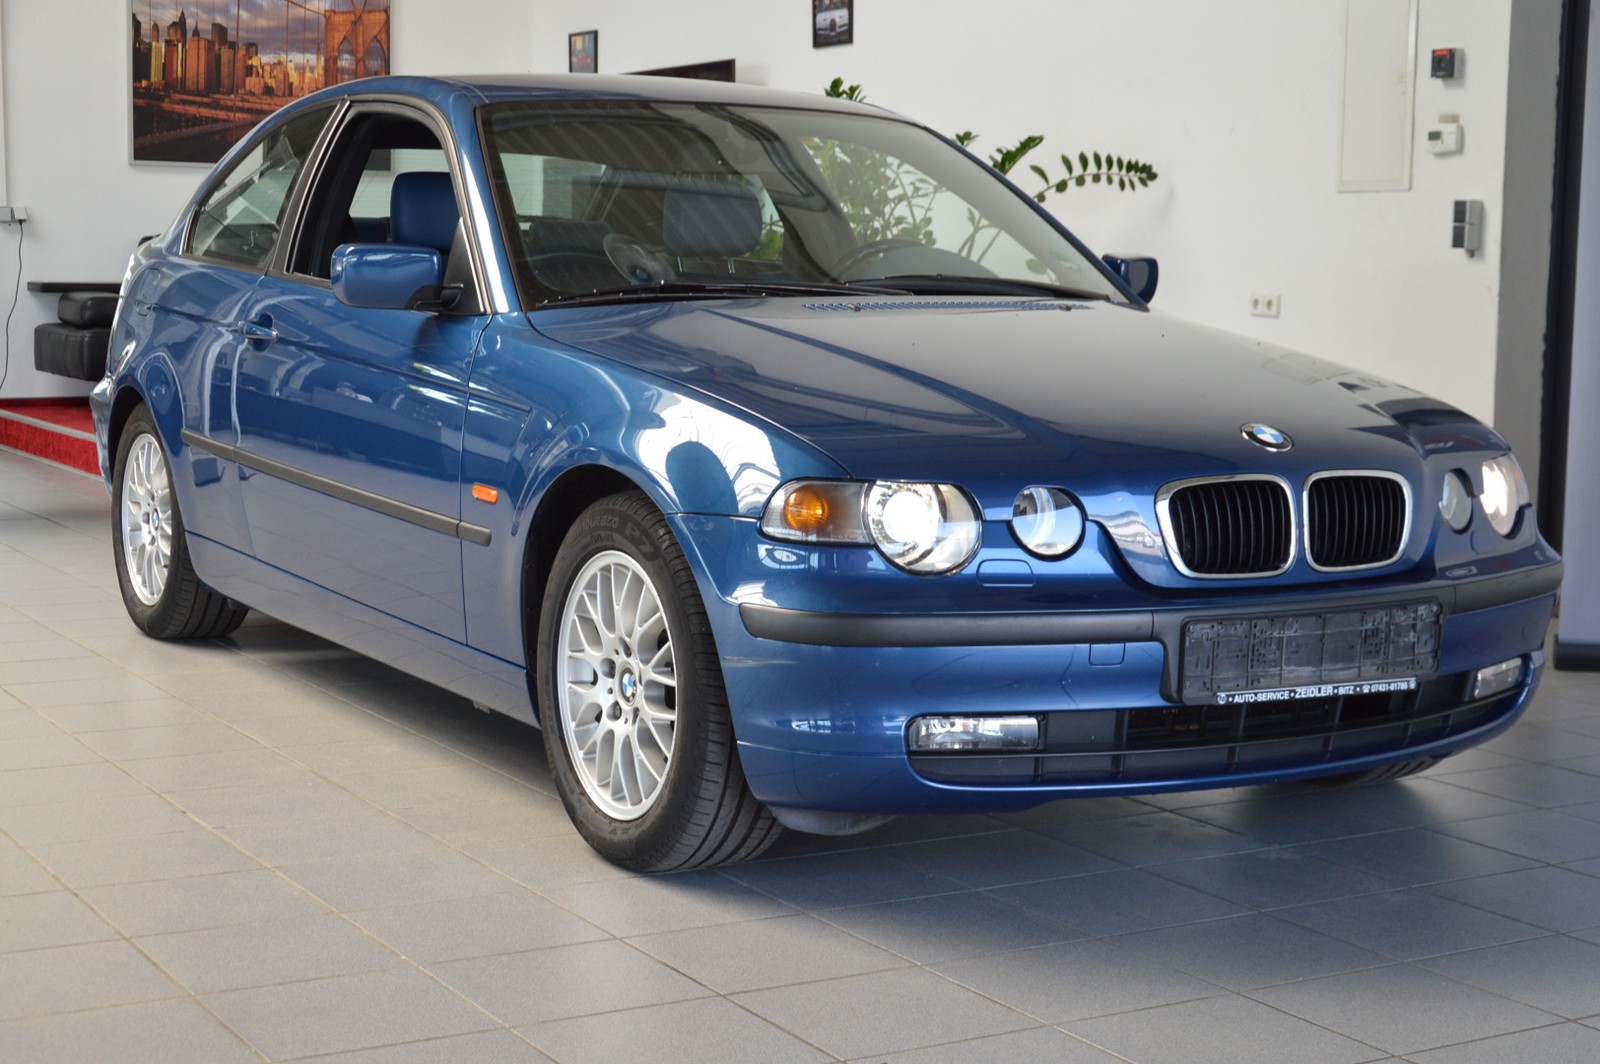 BMW - Gebrauchtwagen & Neuwagen kaufen & verkaufen